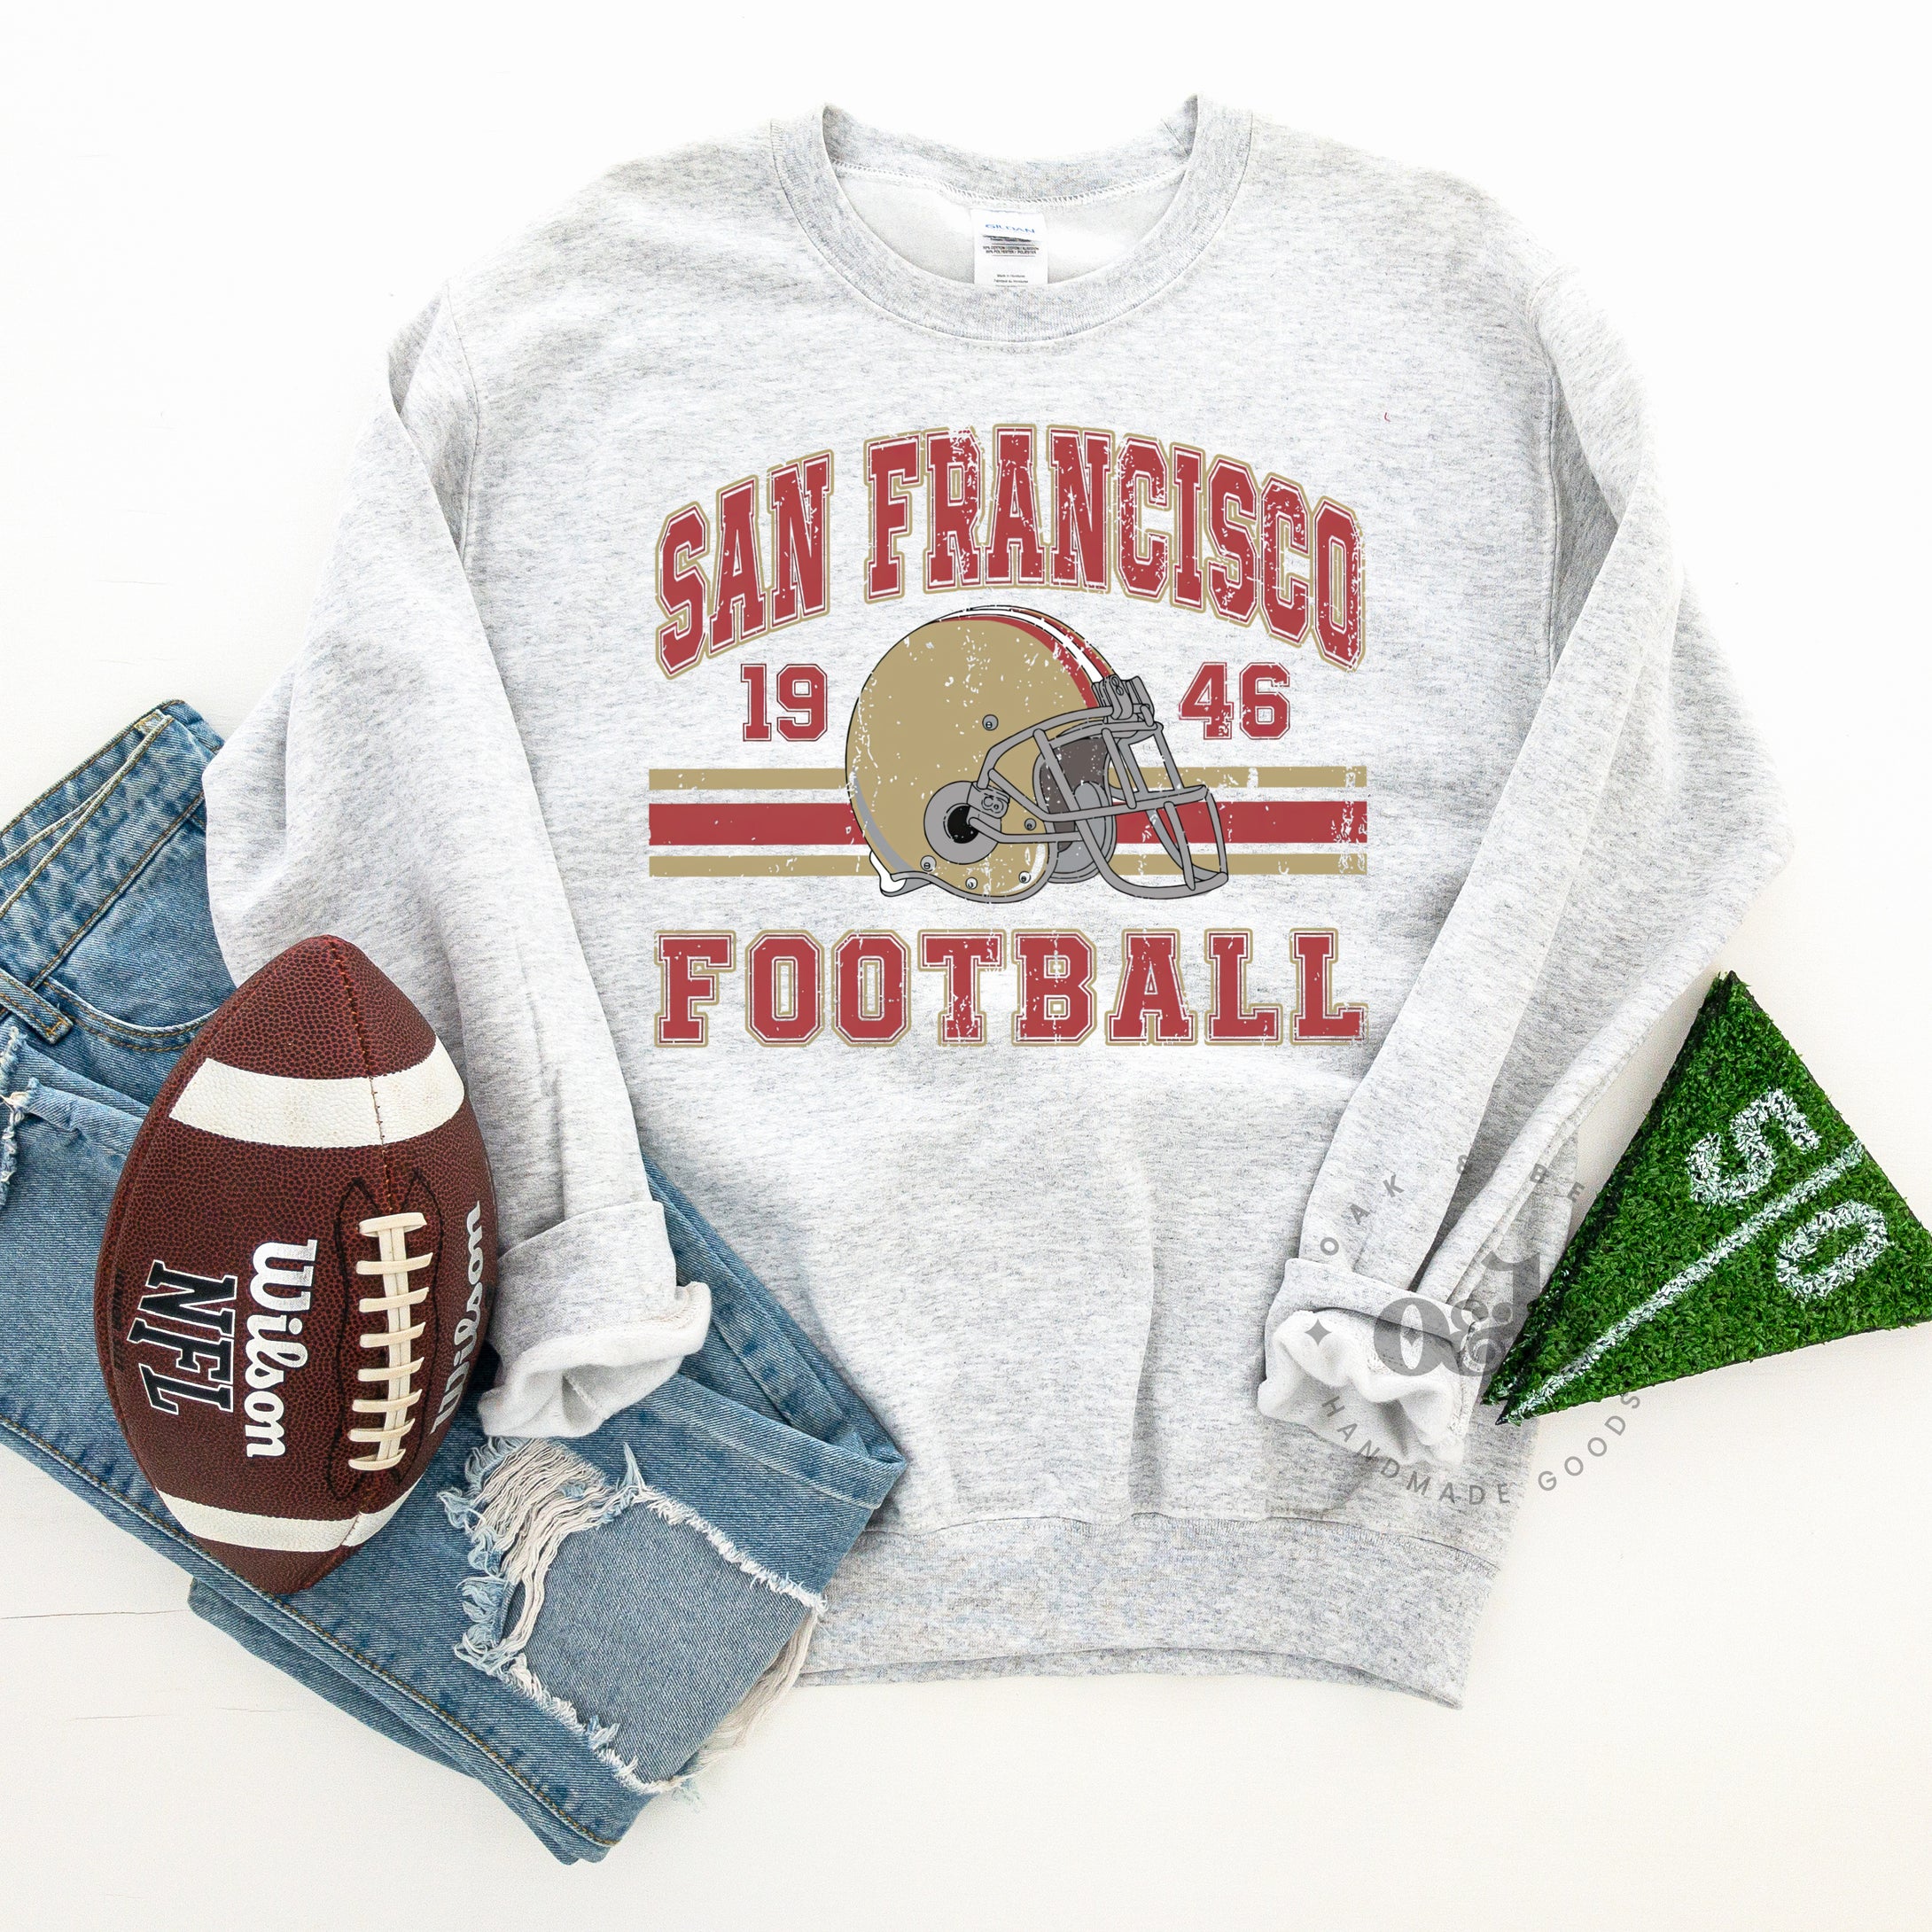 MTO / San Francisco Football, sweatshirt + tee